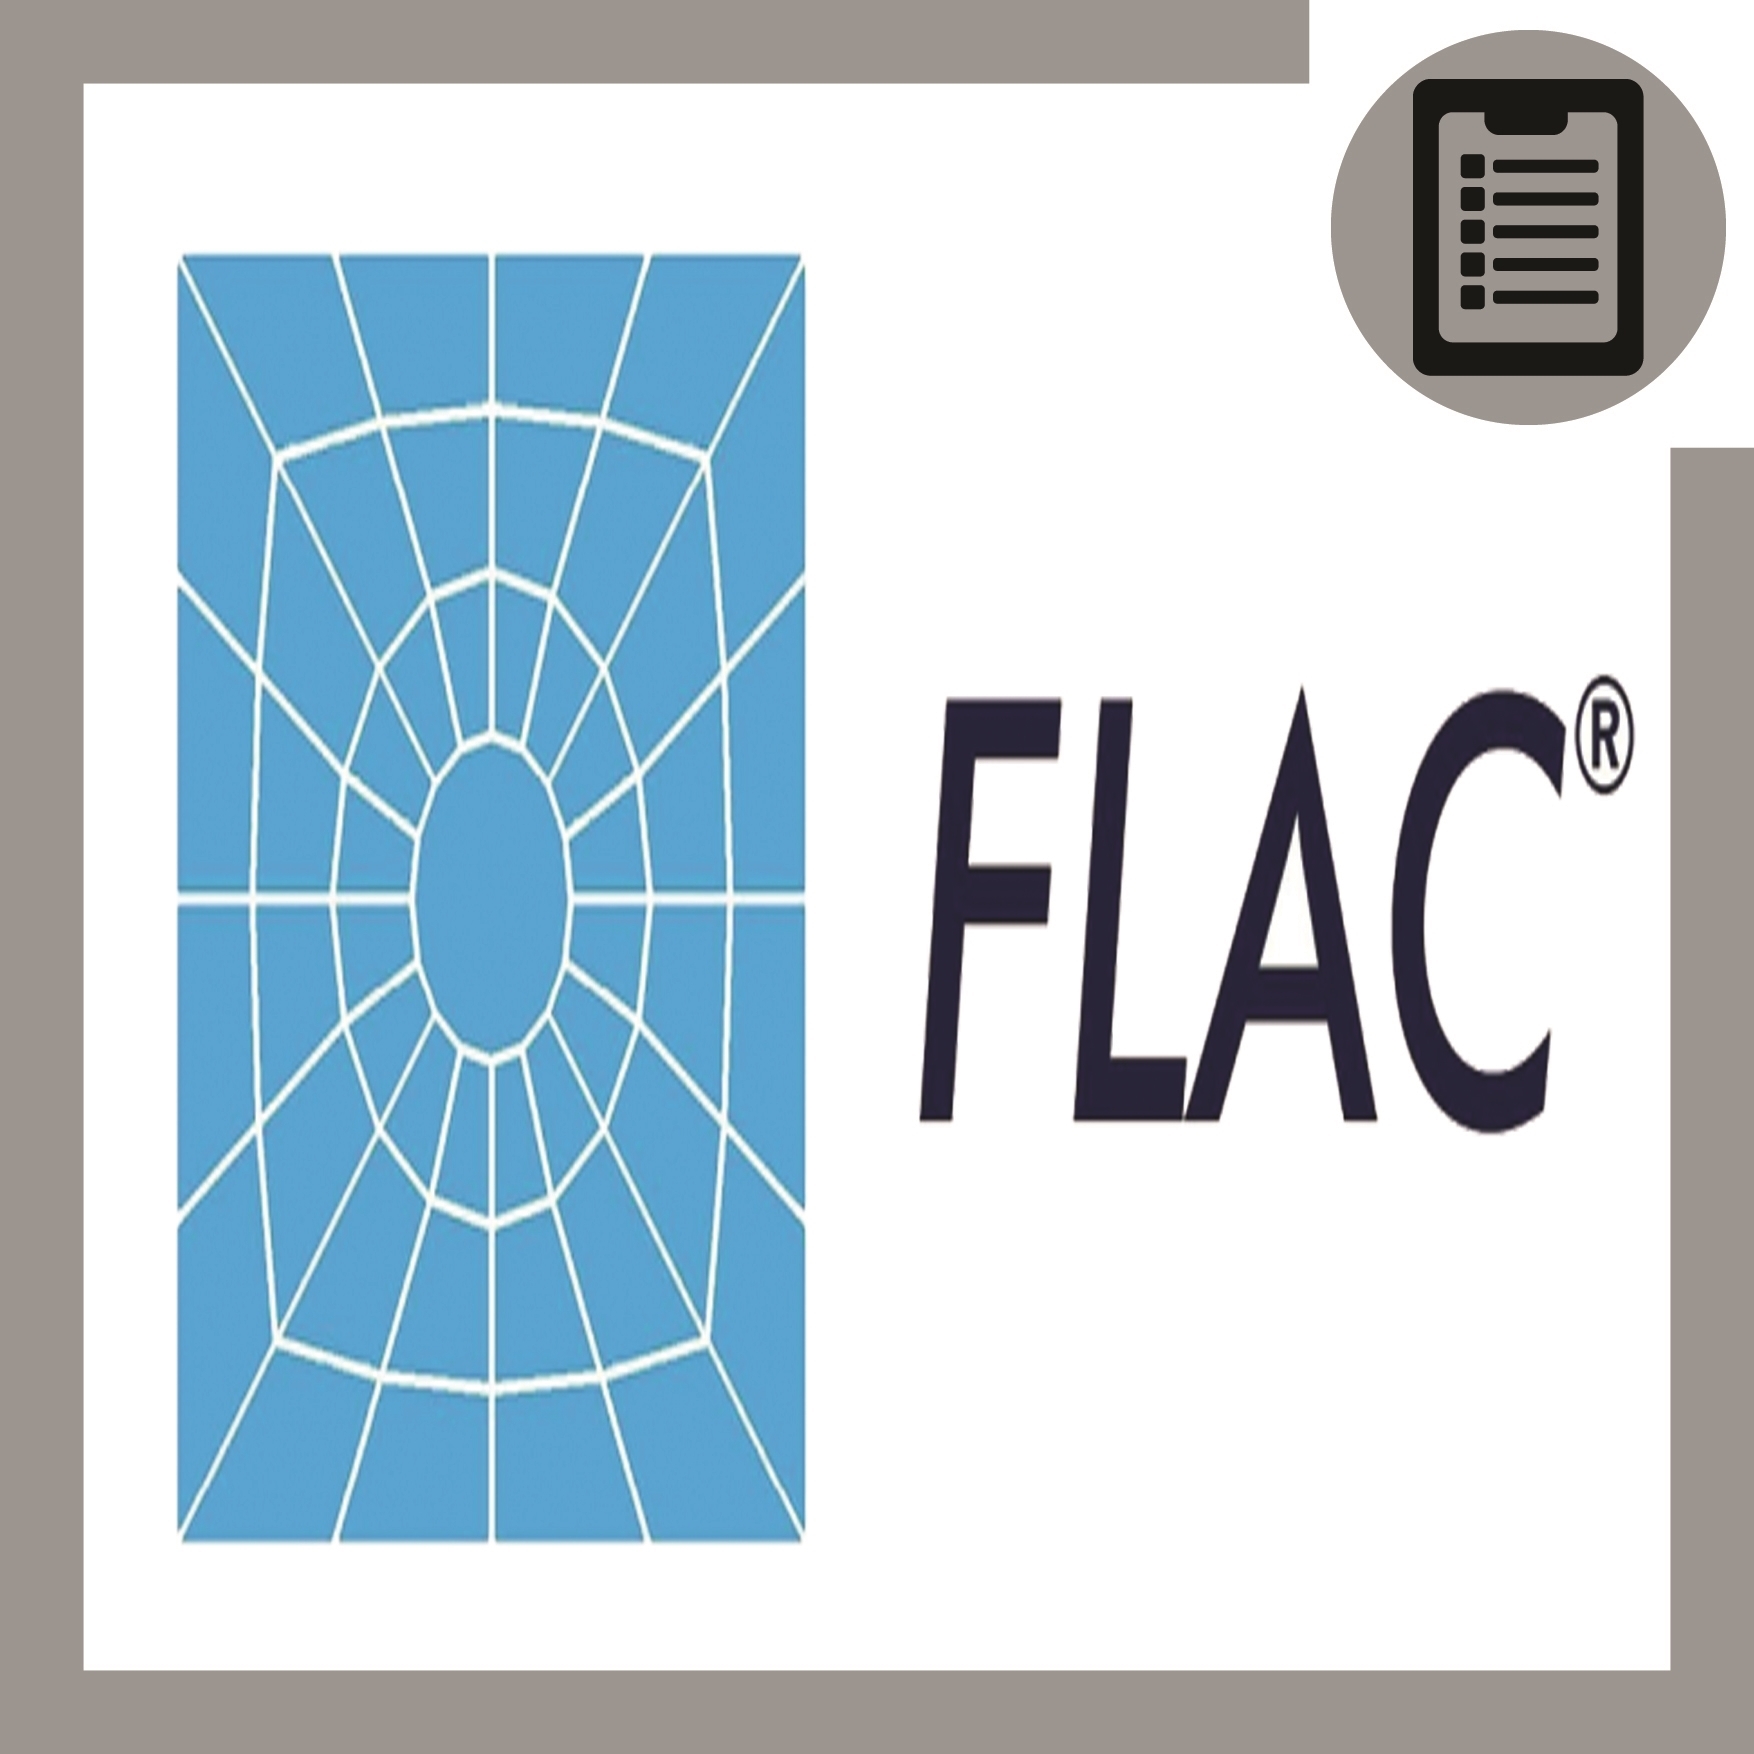 FLAC3D